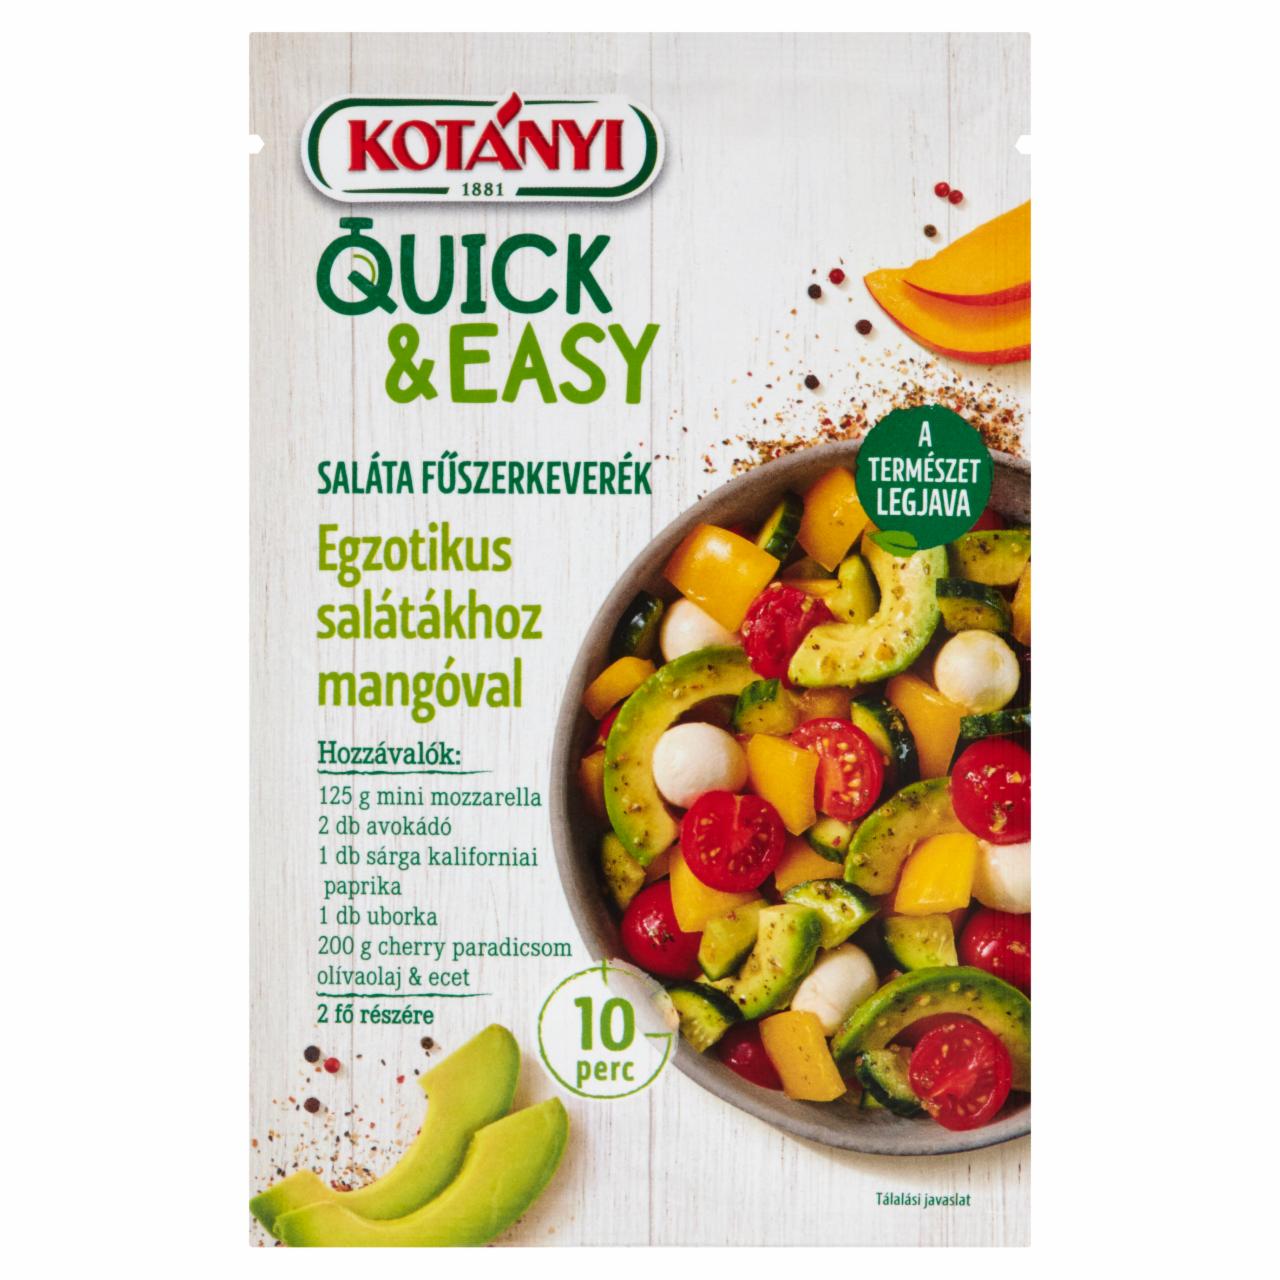 Képek - Kotányi Quick & Easy saláta fűszerkeverék egzotikus salátákhoz mangóval 20 g